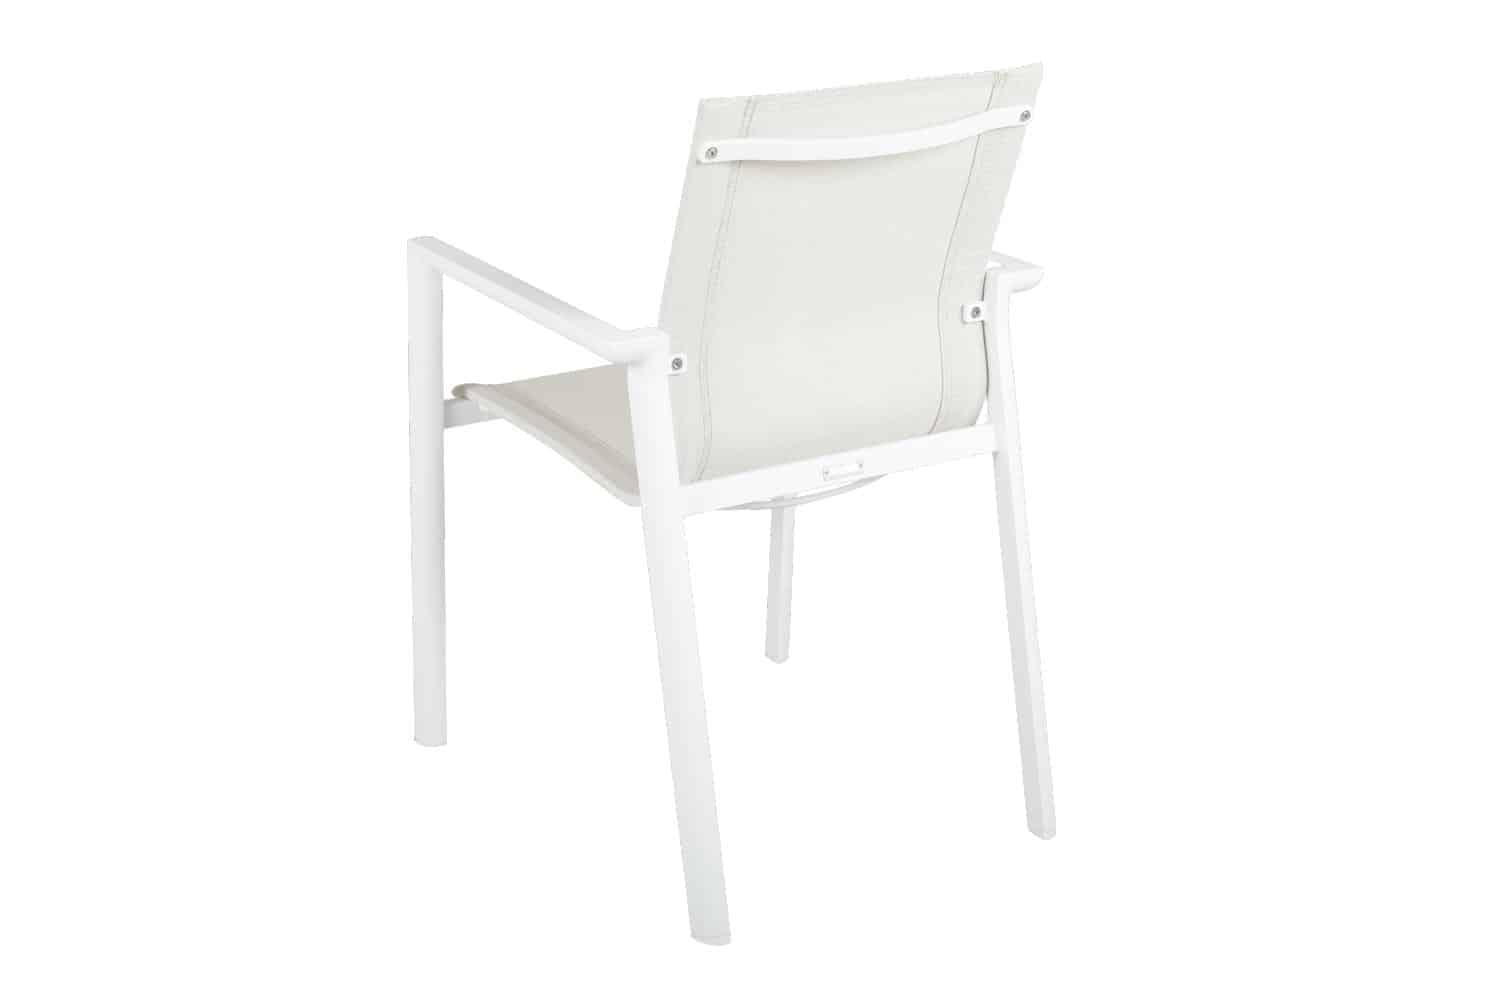 Brafab Delia Karmstol vit/off white är en stapelbar matstol i vitfärgad aluminium och off white textilene.